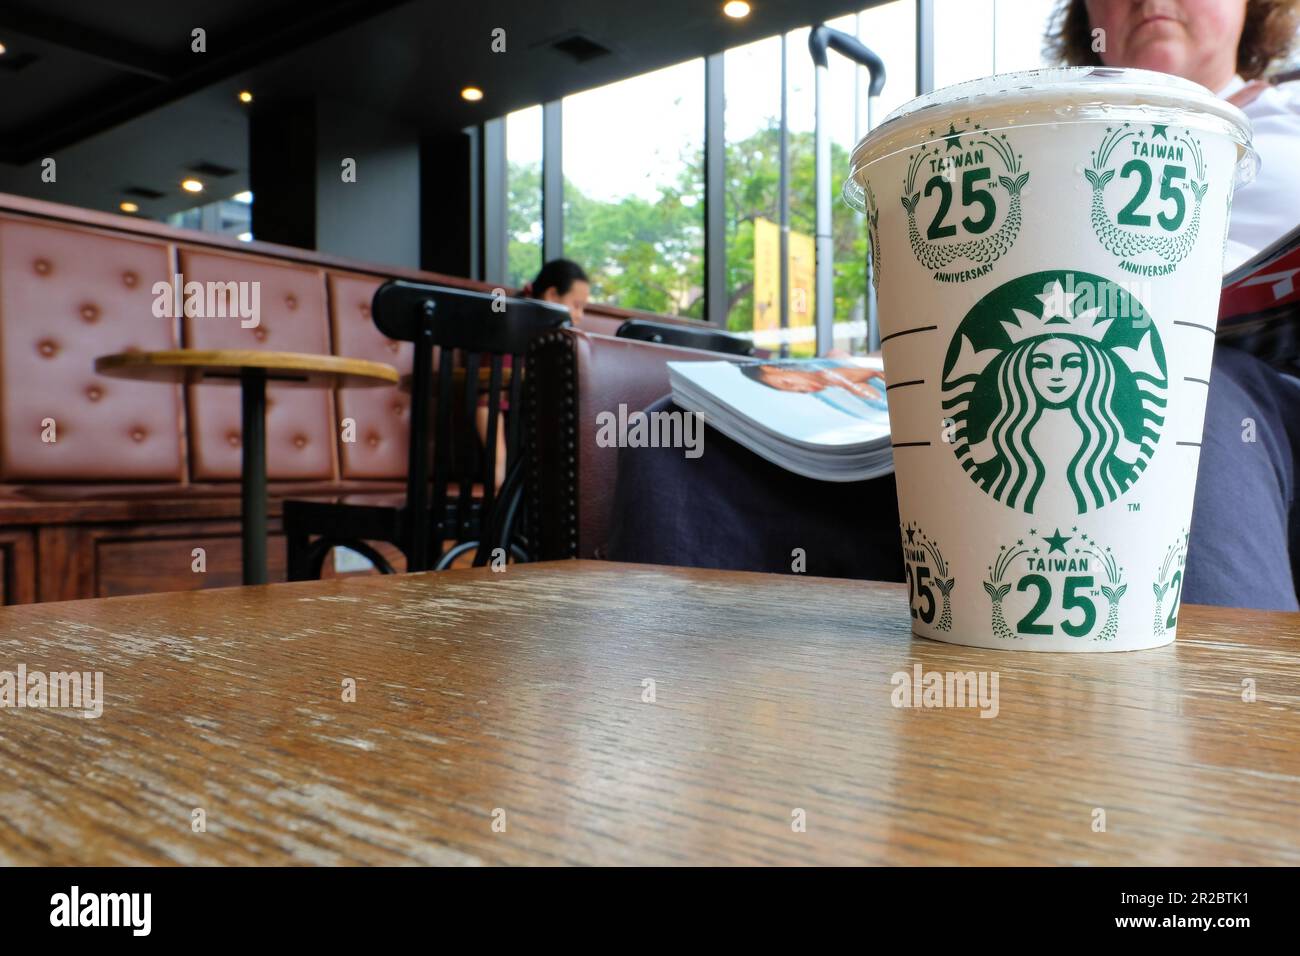 La tasse de café de Starbuck commémorant le 25th anniversaire de la présence de la compagnie à Taïwan; commémoration de vingt-cinq ans d'activité à Taïwan. Banque D'Images